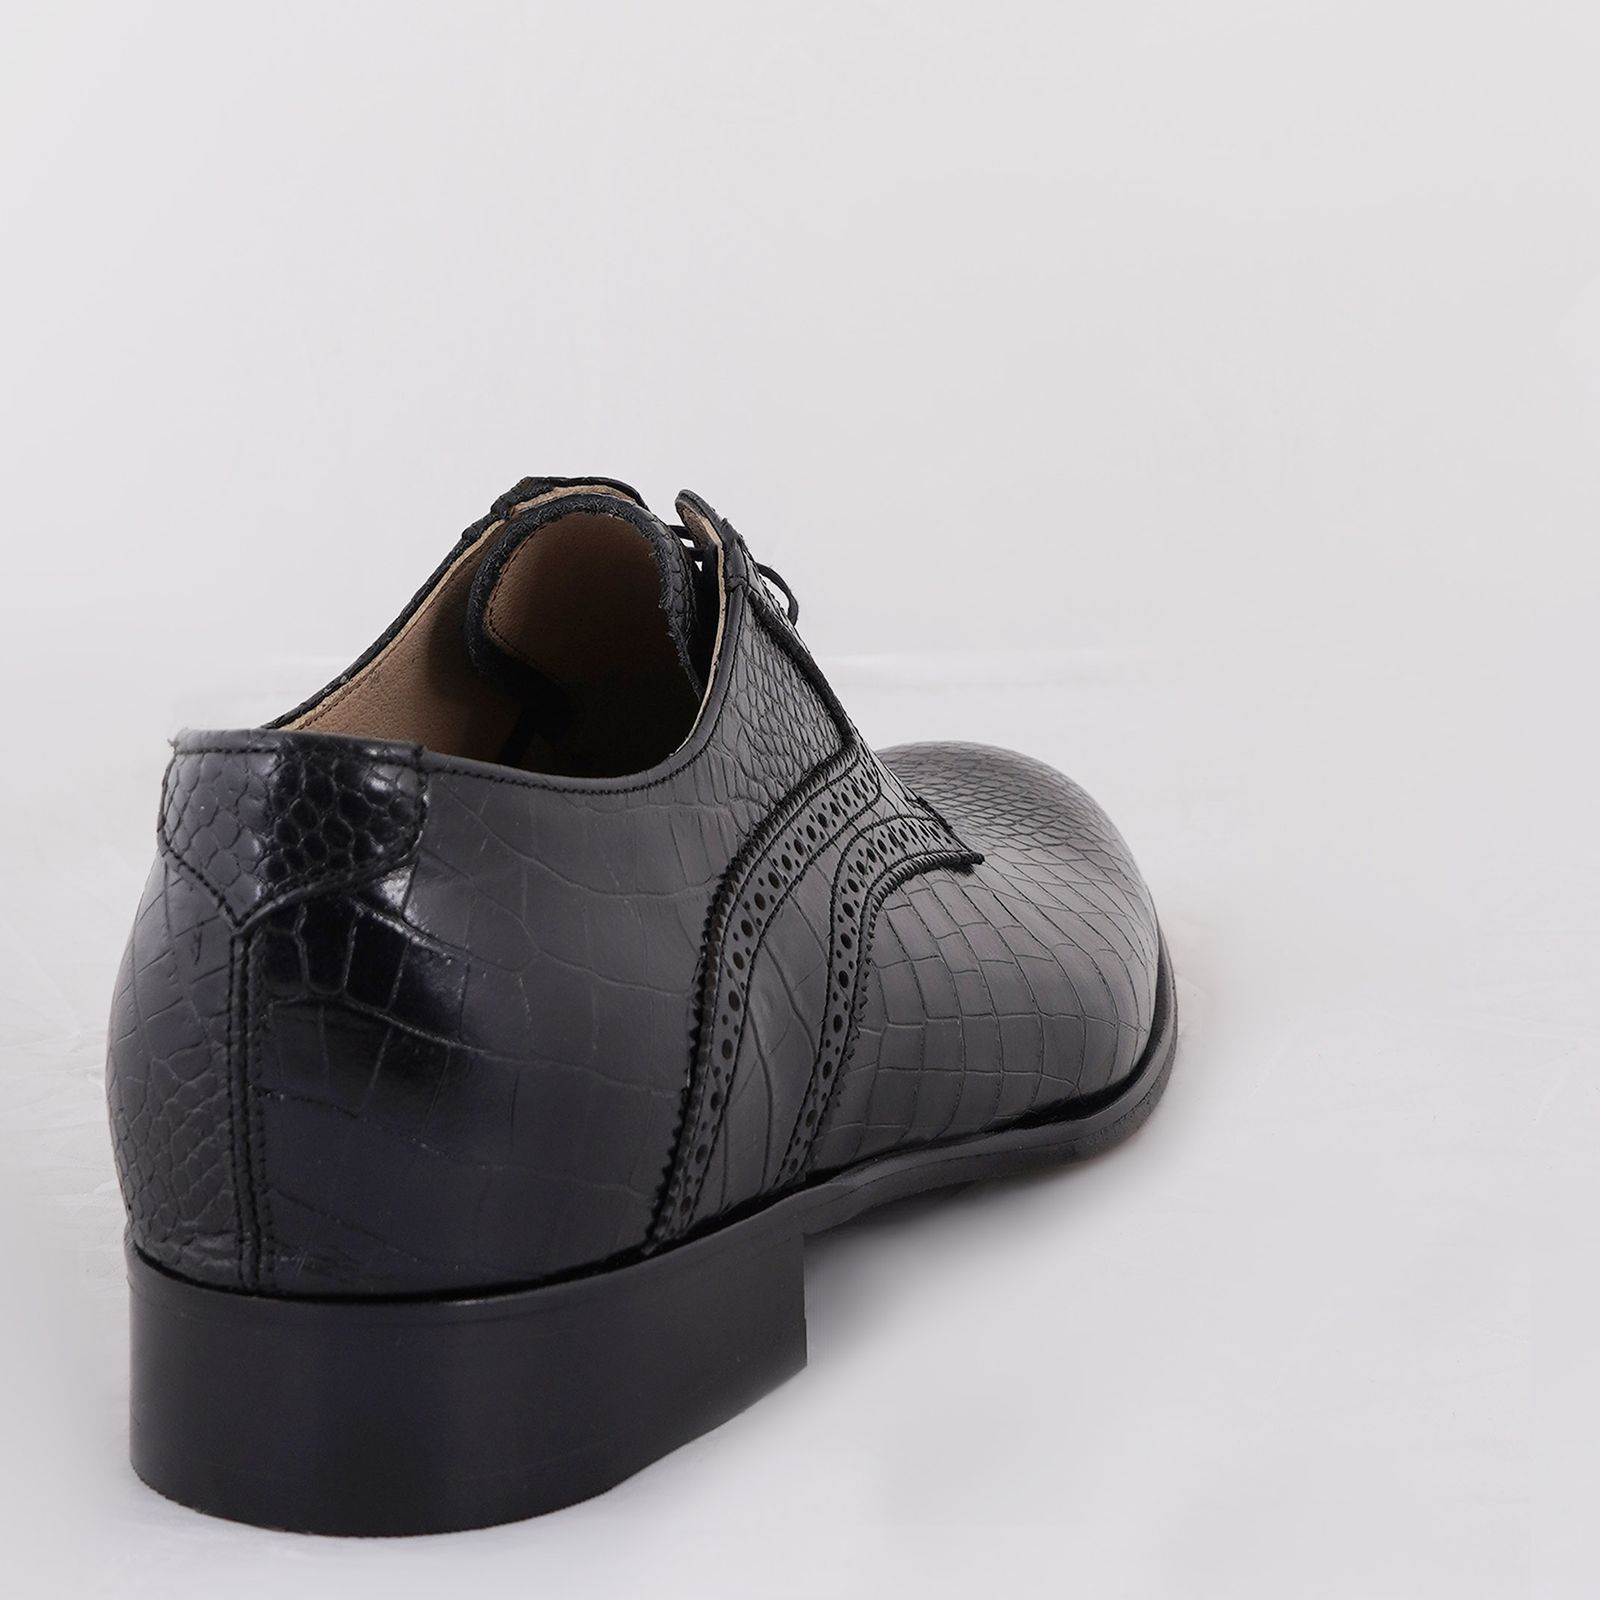 کفش مردانه کرمانی مدل تمام چرم طبیعی کروکو دستدوز کد 1074 رنگ مشکی -  - 3